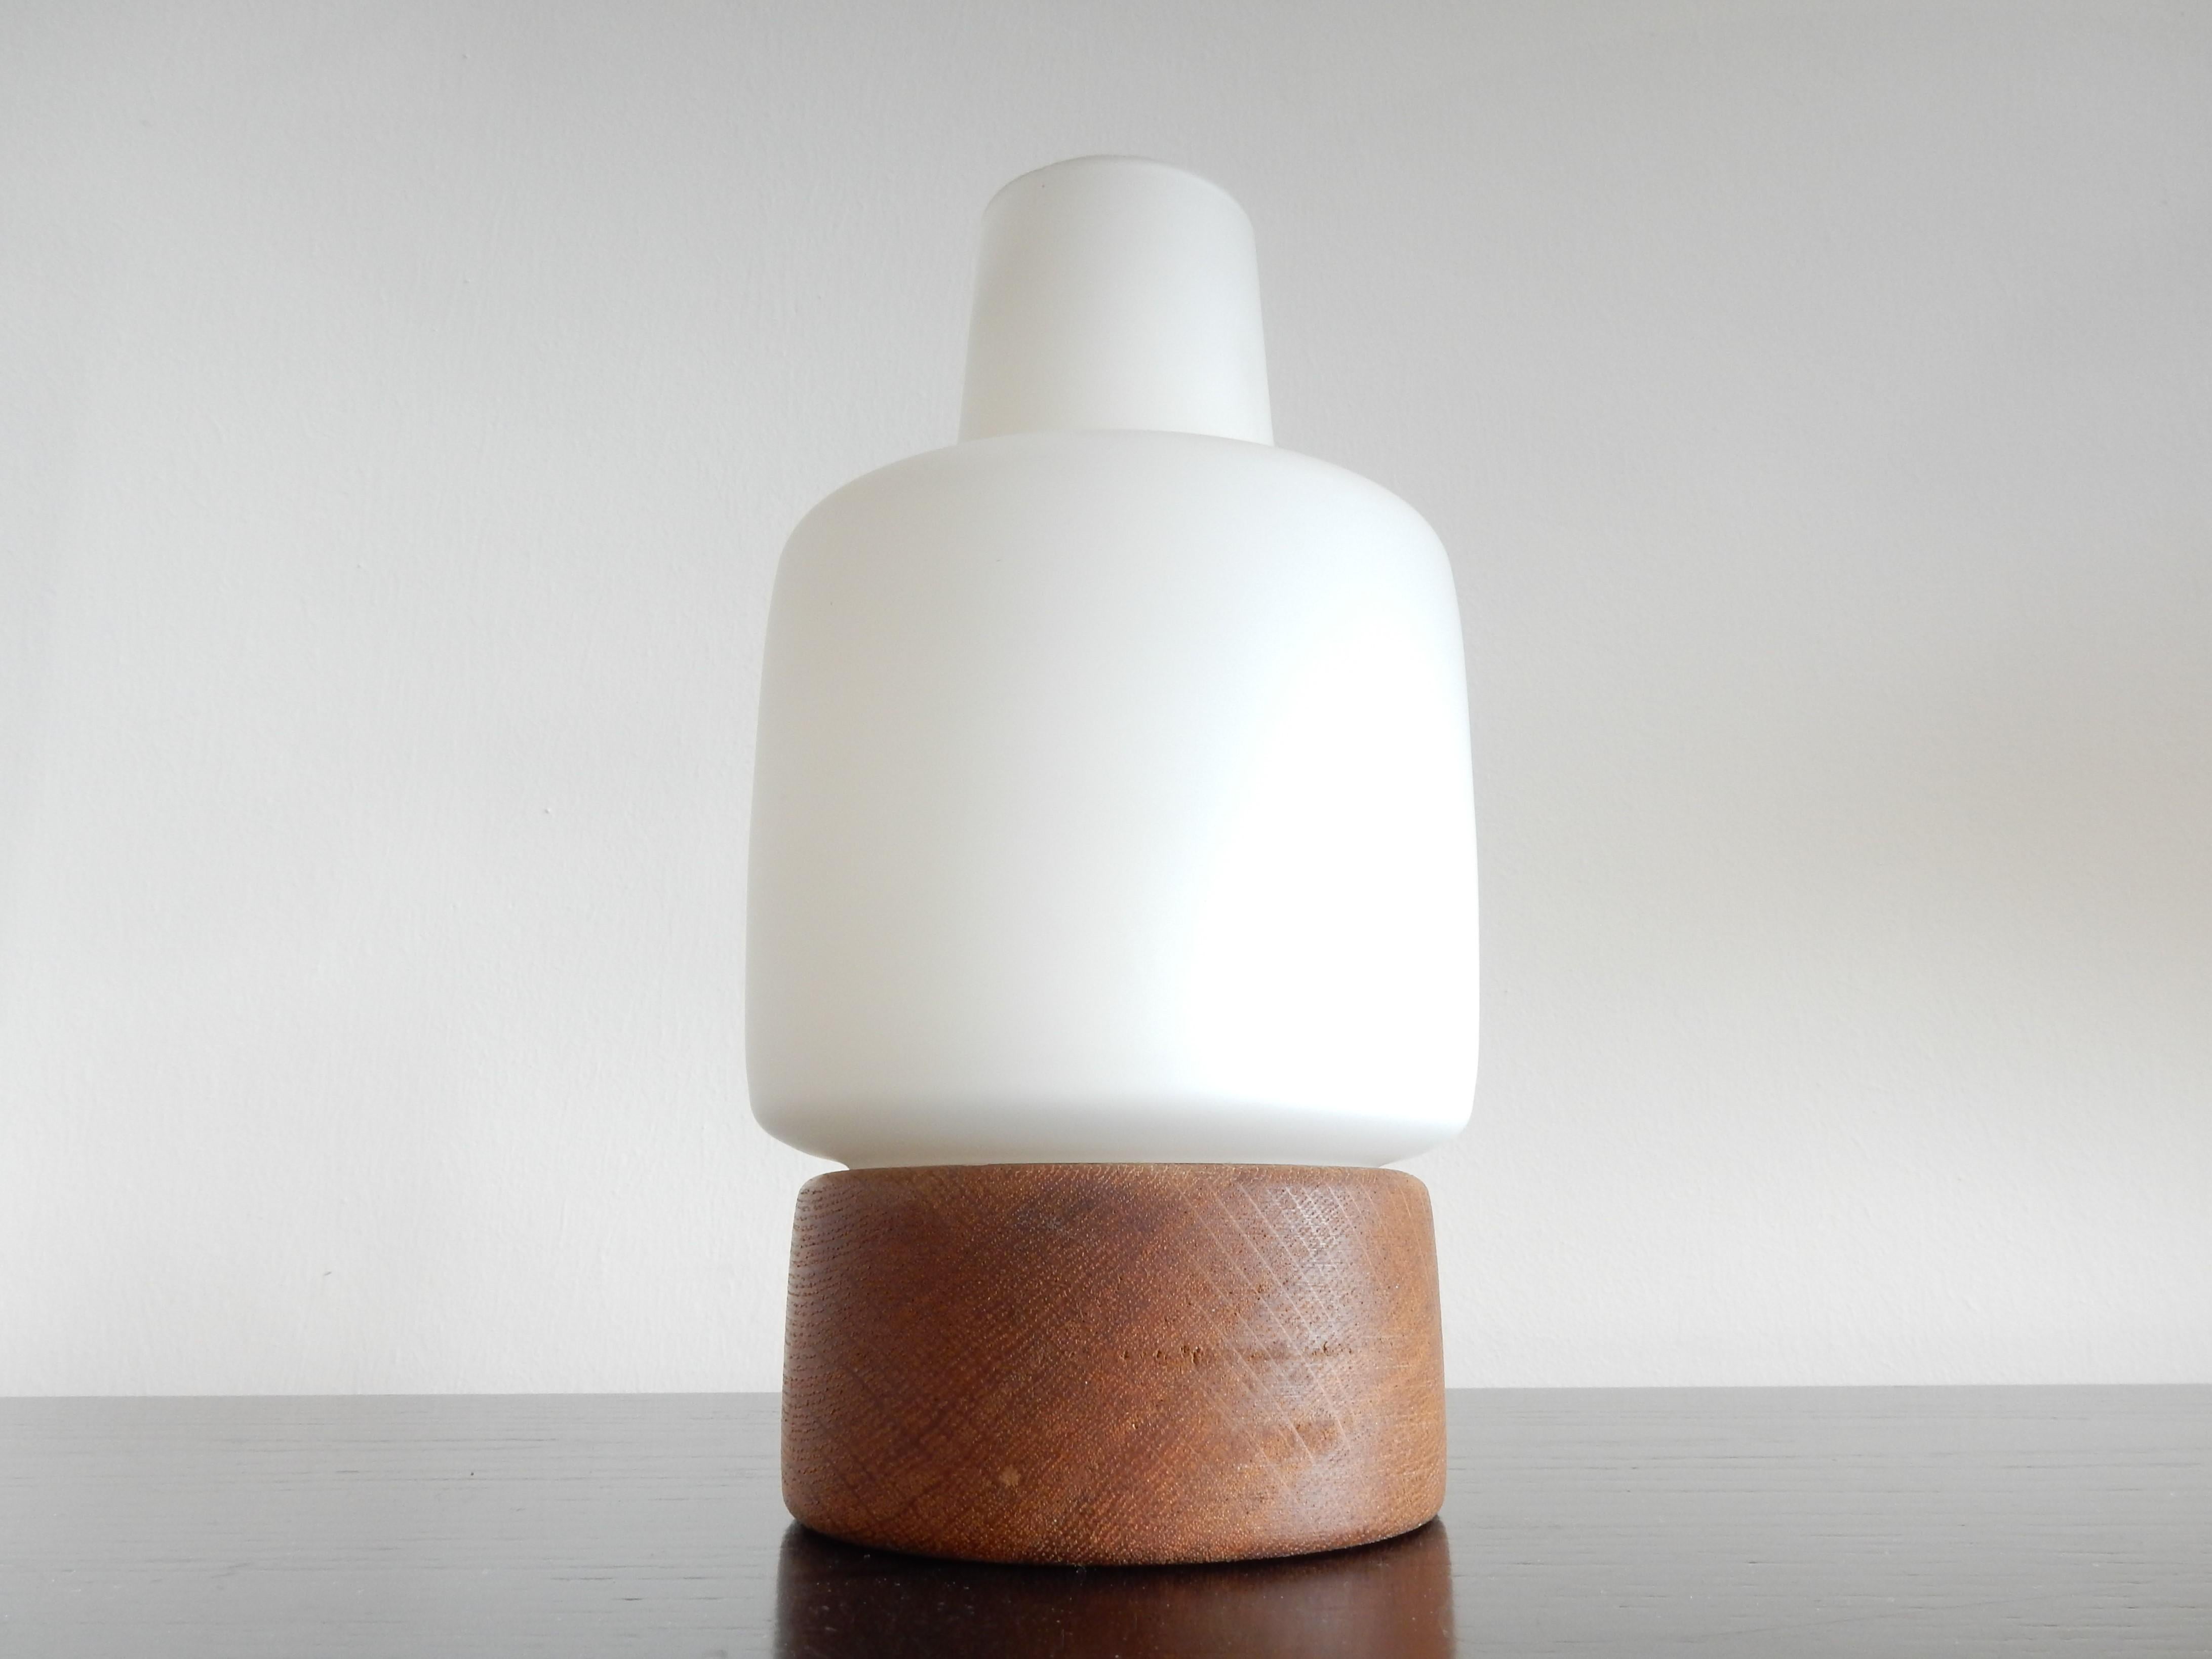 Cette jolie lampe de table, que l'on ne voit pas souvent, a été conçue par Uno et Östen Kristiansson pour Luxus en Suède, dans les années 1950. Il a une base en chêne traité à l'huile avec un abat-jour en verre opalin qui donne une belle lumière